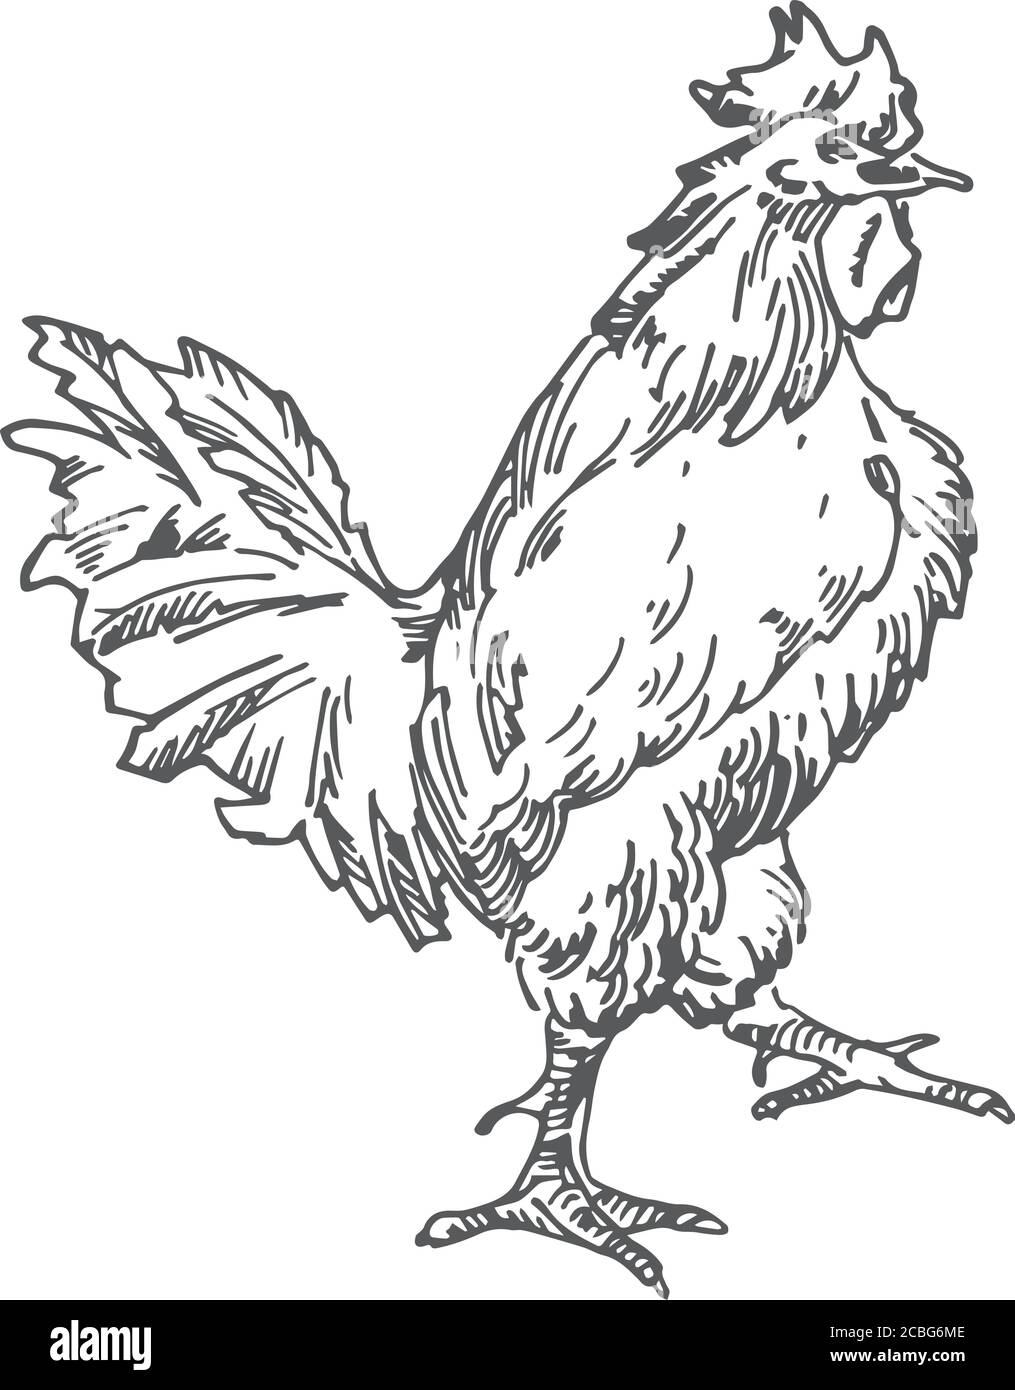 Rooster illustrazione vettoriale disegnata a mano. Astratto Nazionale pollame Bird Sketch. Disegno stile incisione. Illustrazione Vettoriale